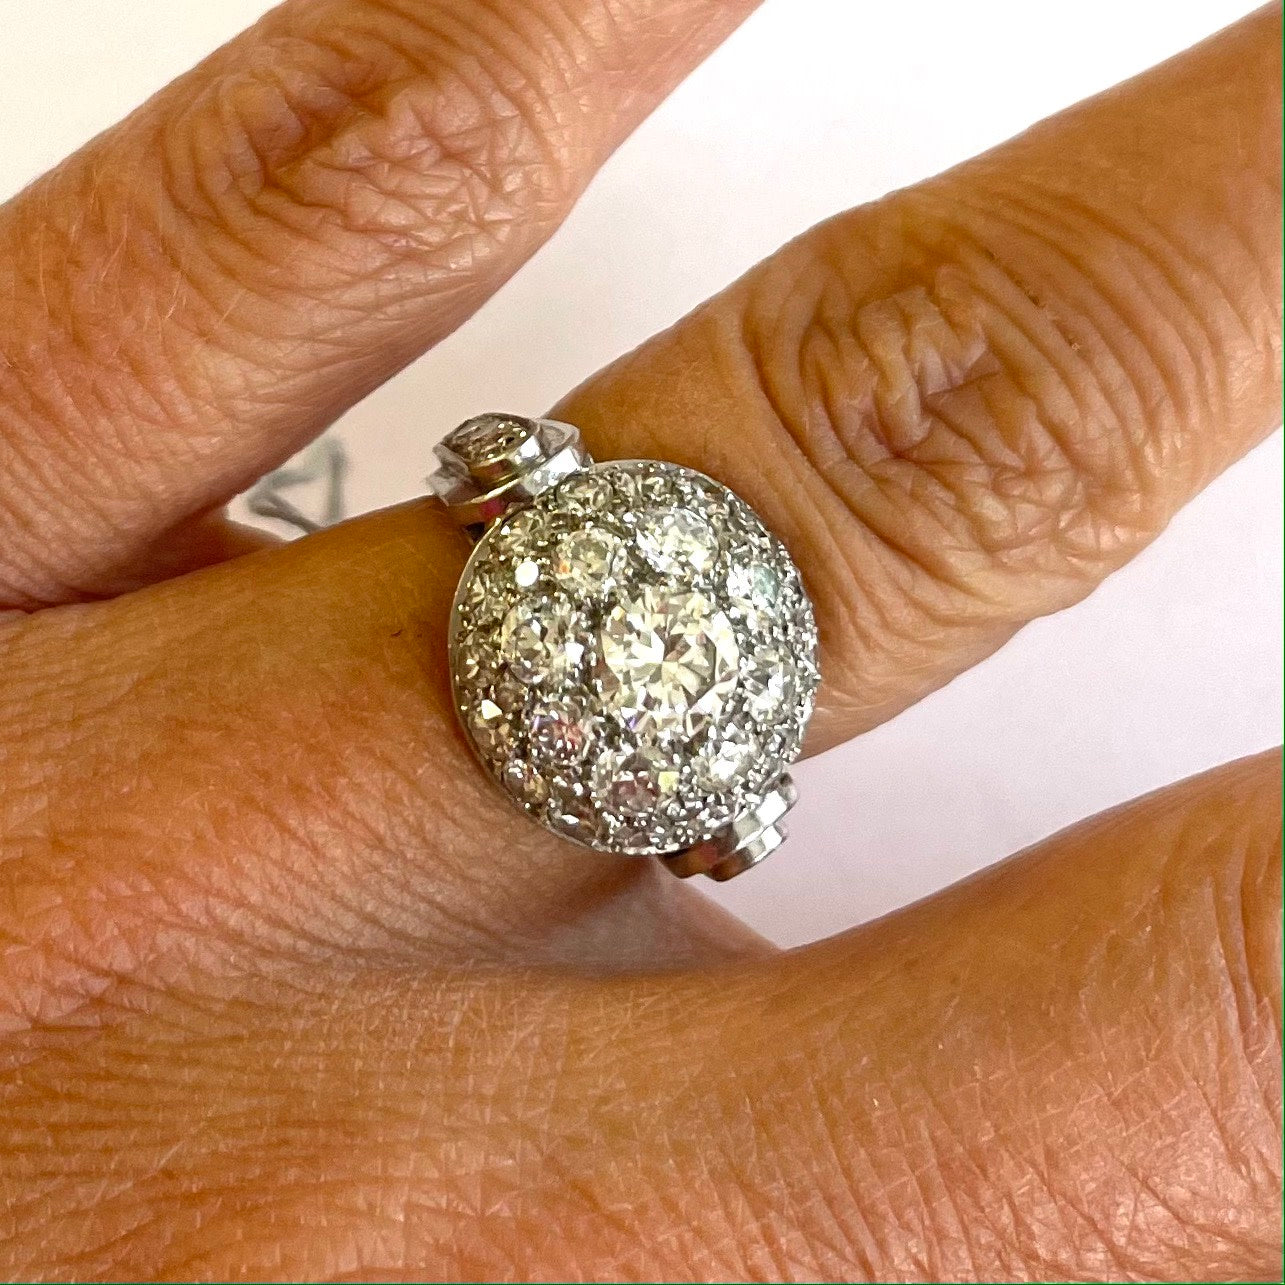 French 1940s Platinum Diamond Ring on finger